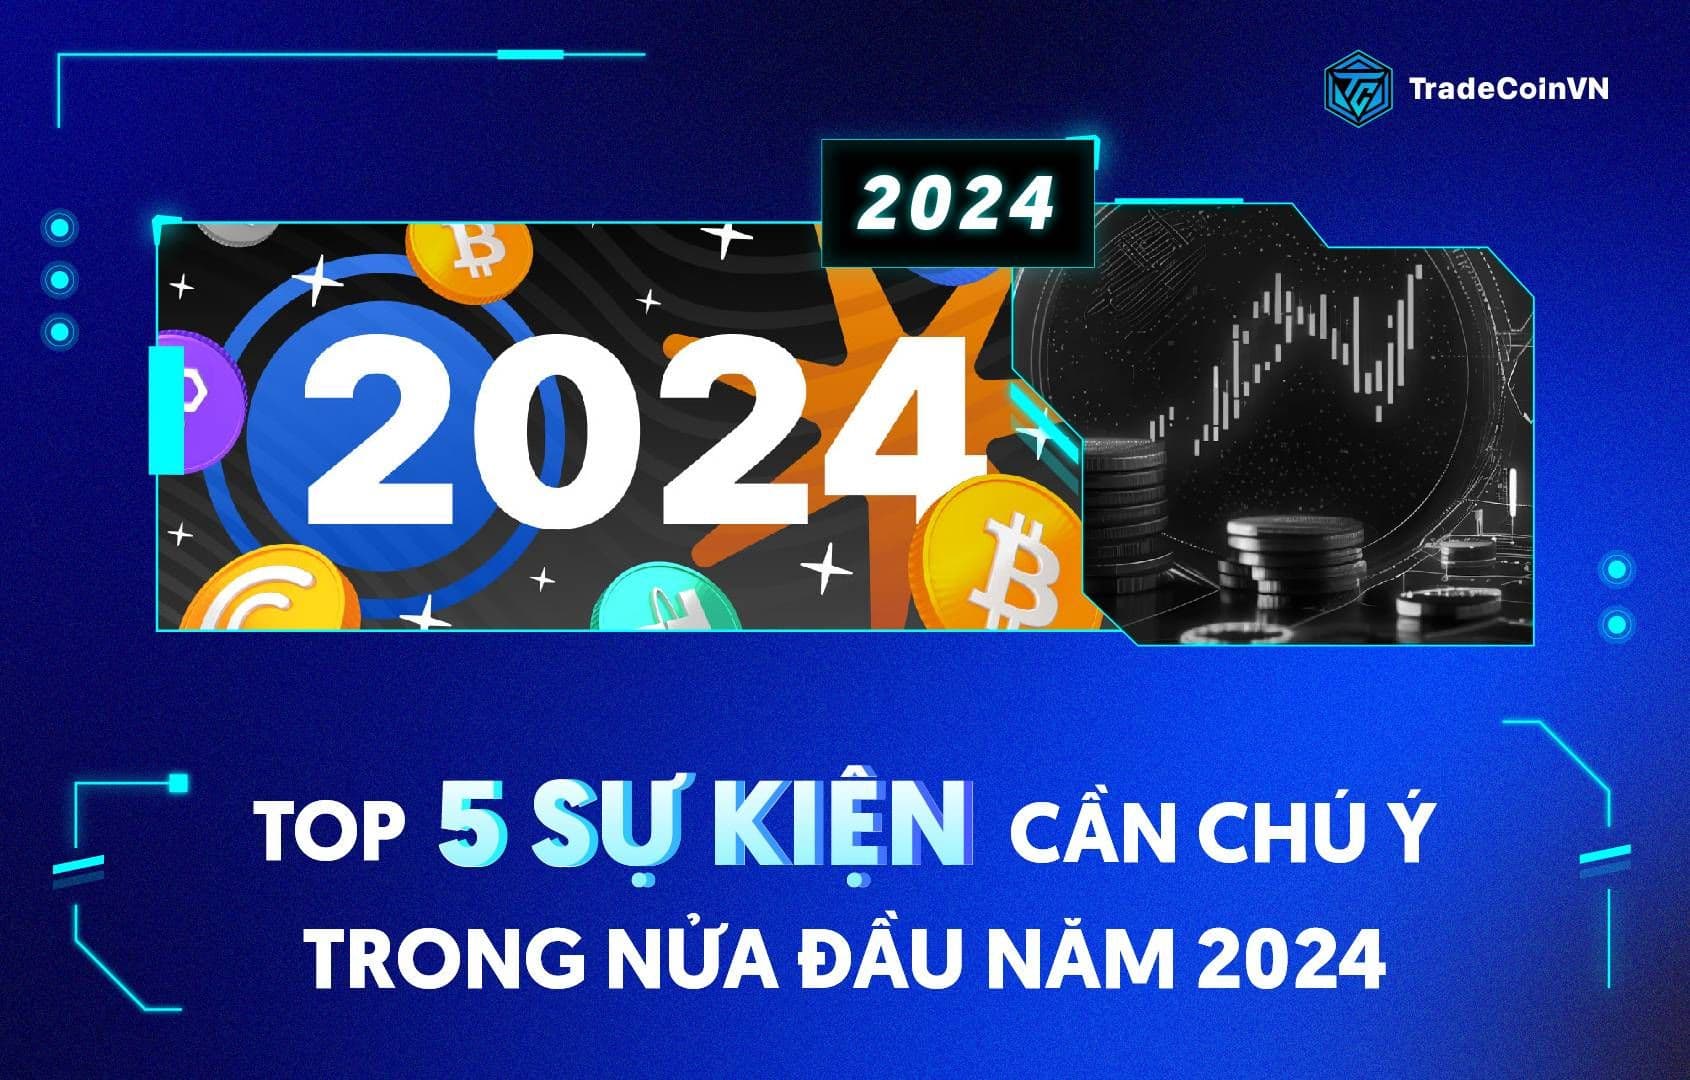 Top 5 sự kiện người chơi crypto cần chú ý trong nửa đầu năm 2024